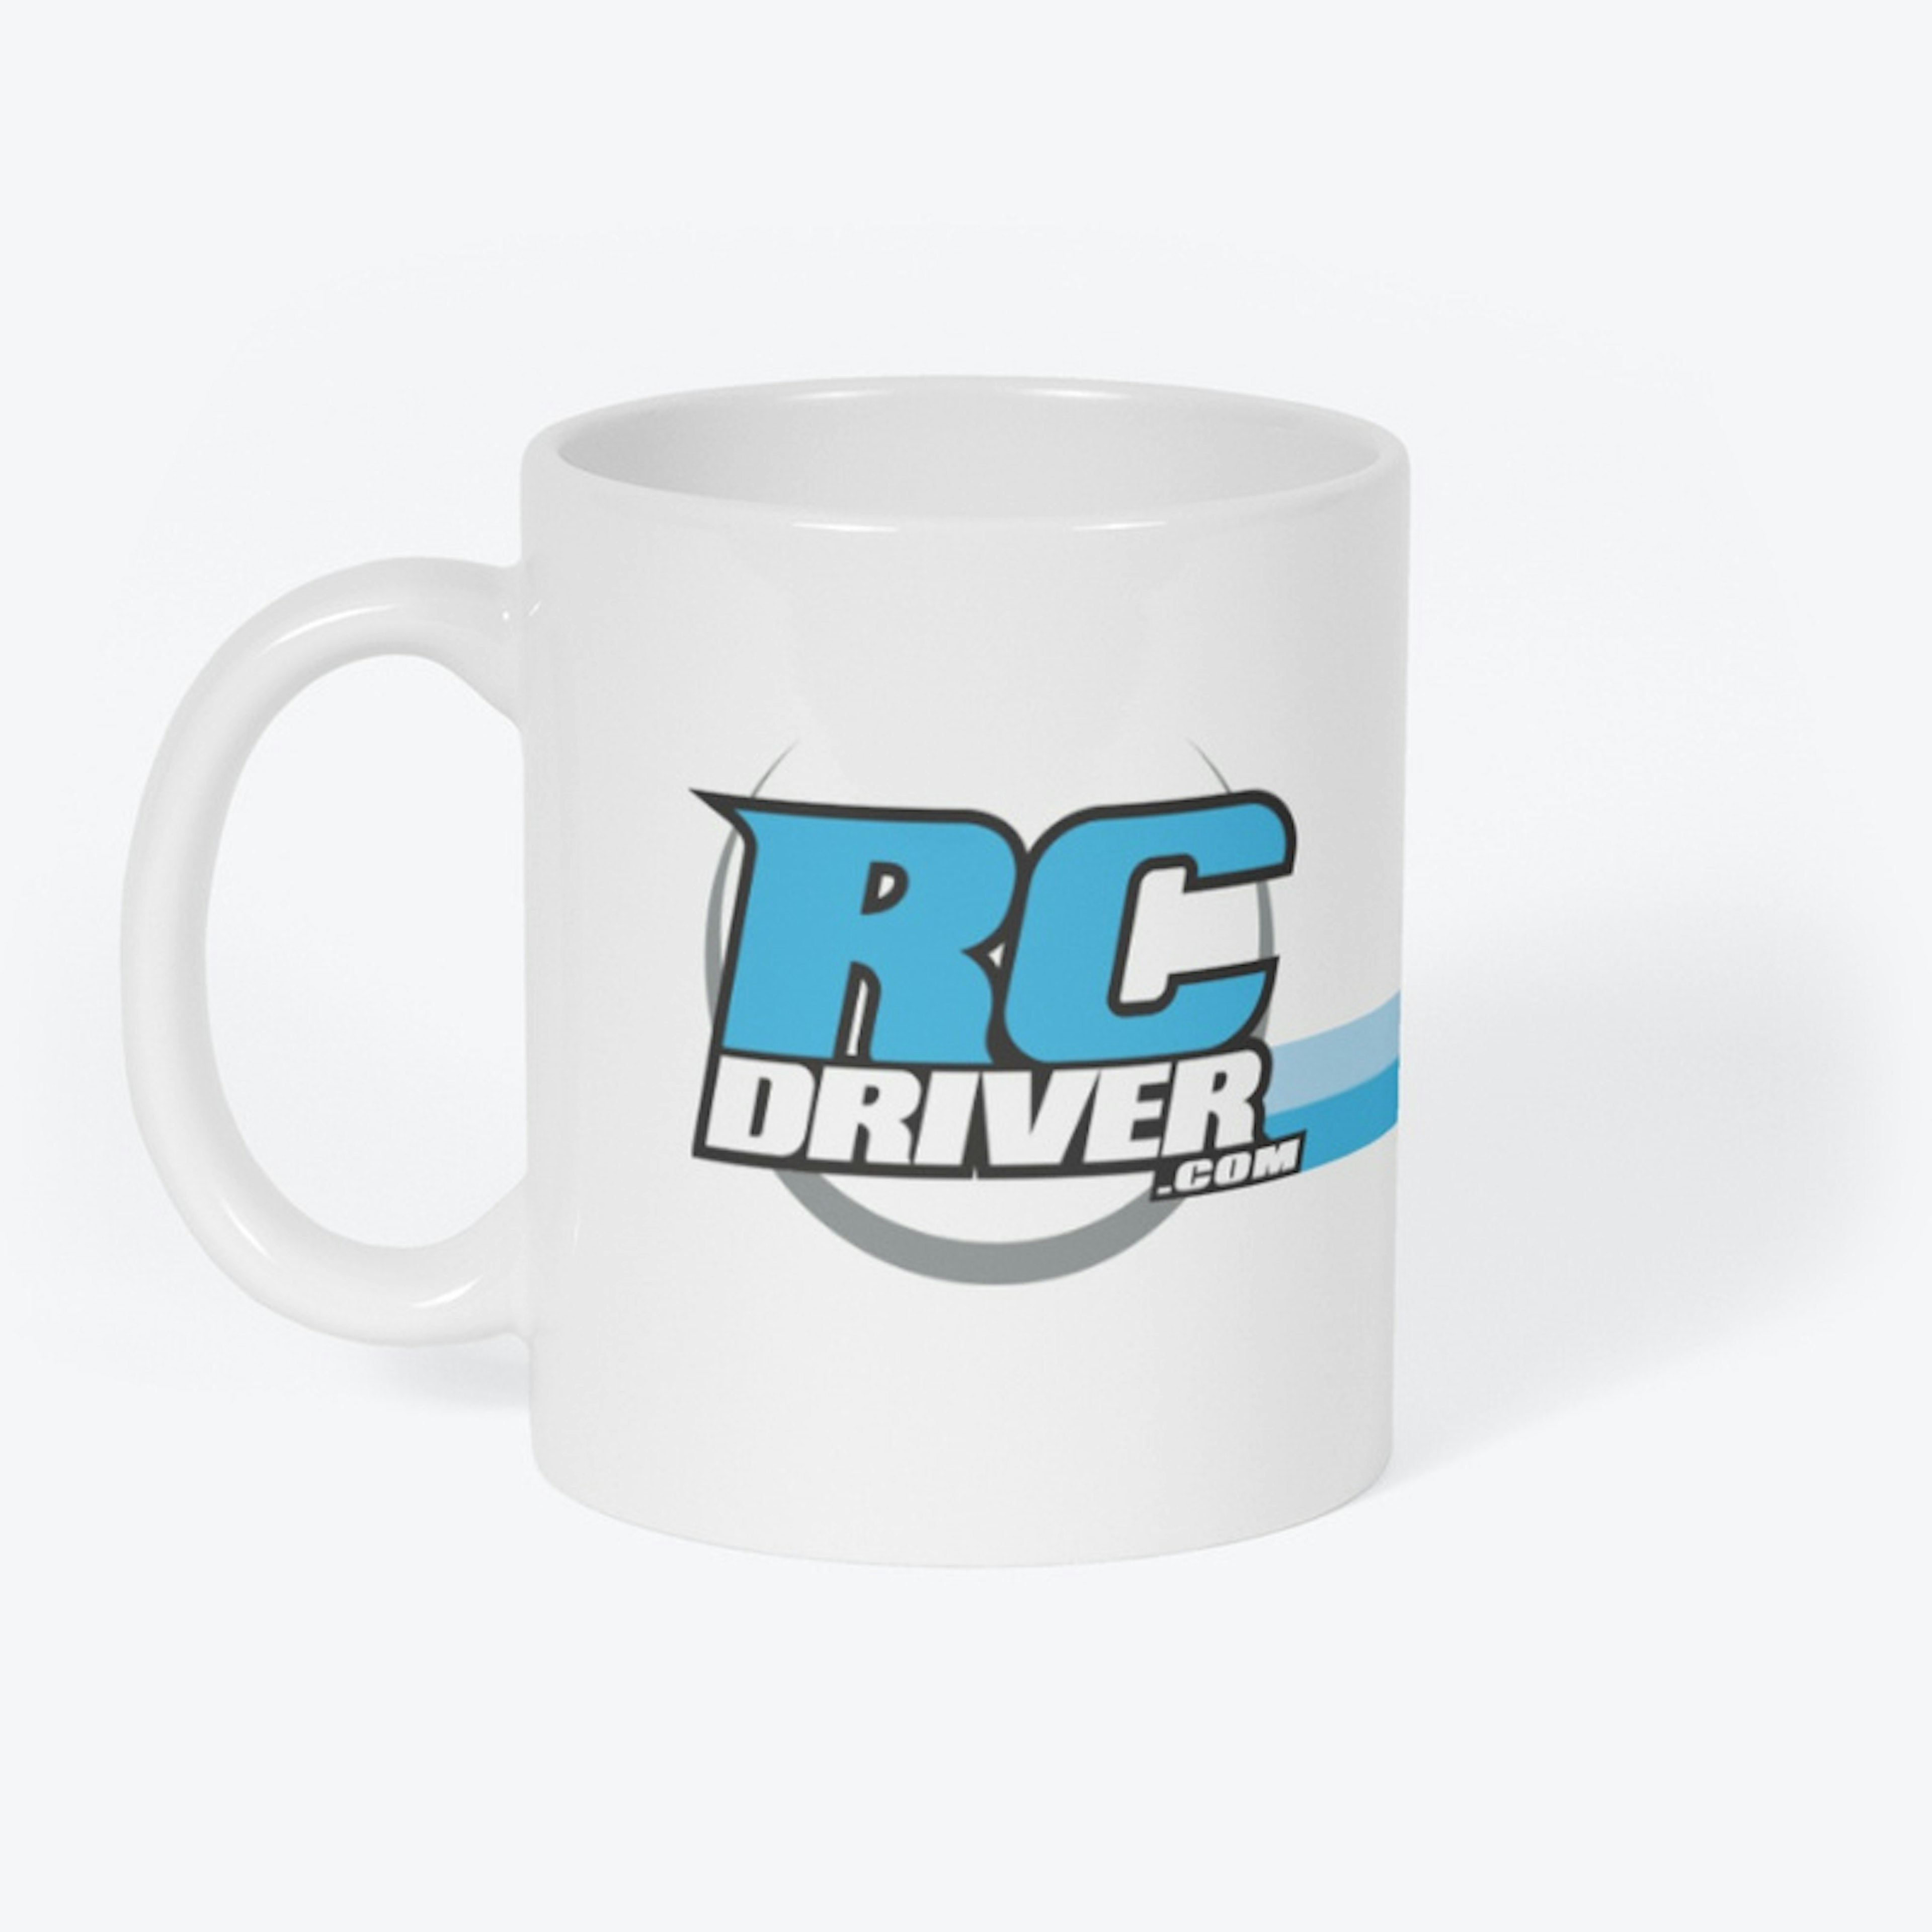 RC Driver Basher Mug